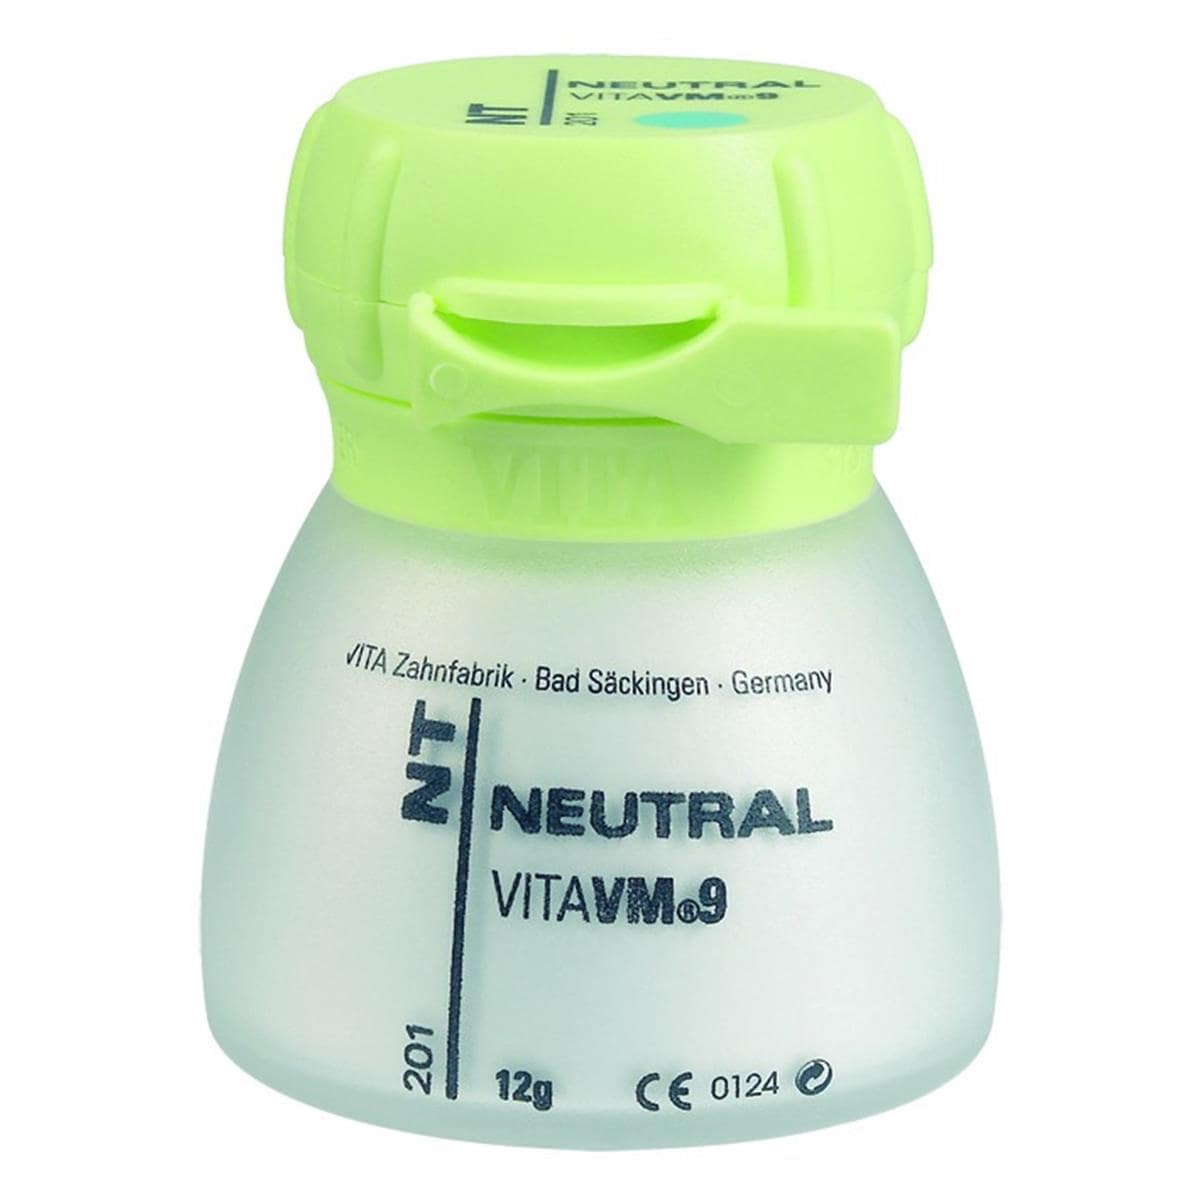 VM9 VITA - Neutral - NT - Le pot de 50 g